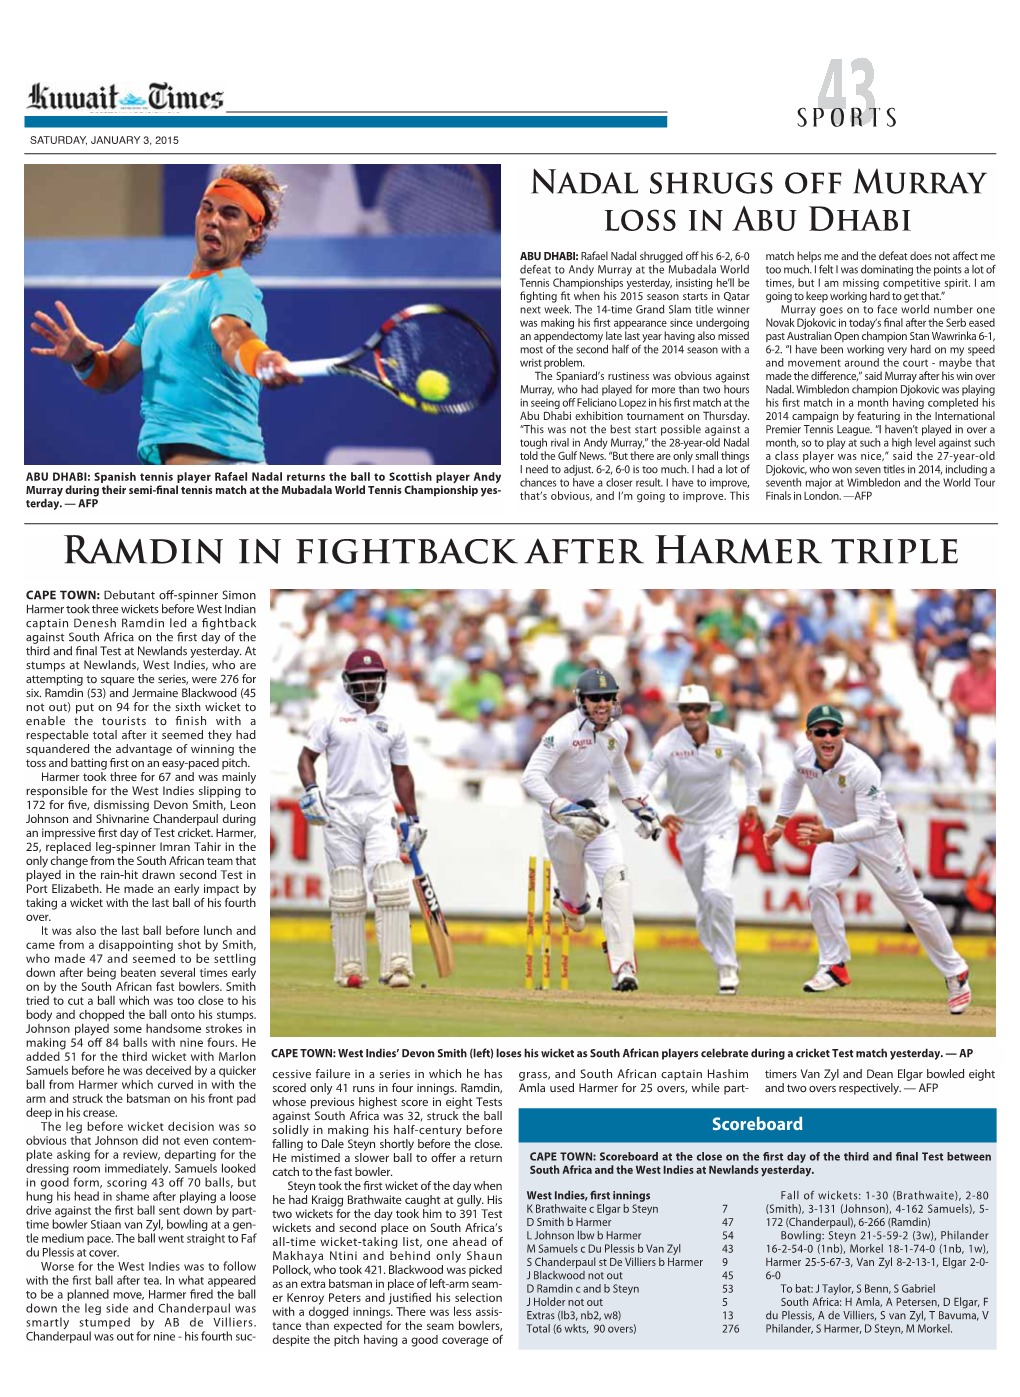 Ramdin in Fightback After Harmer Triple